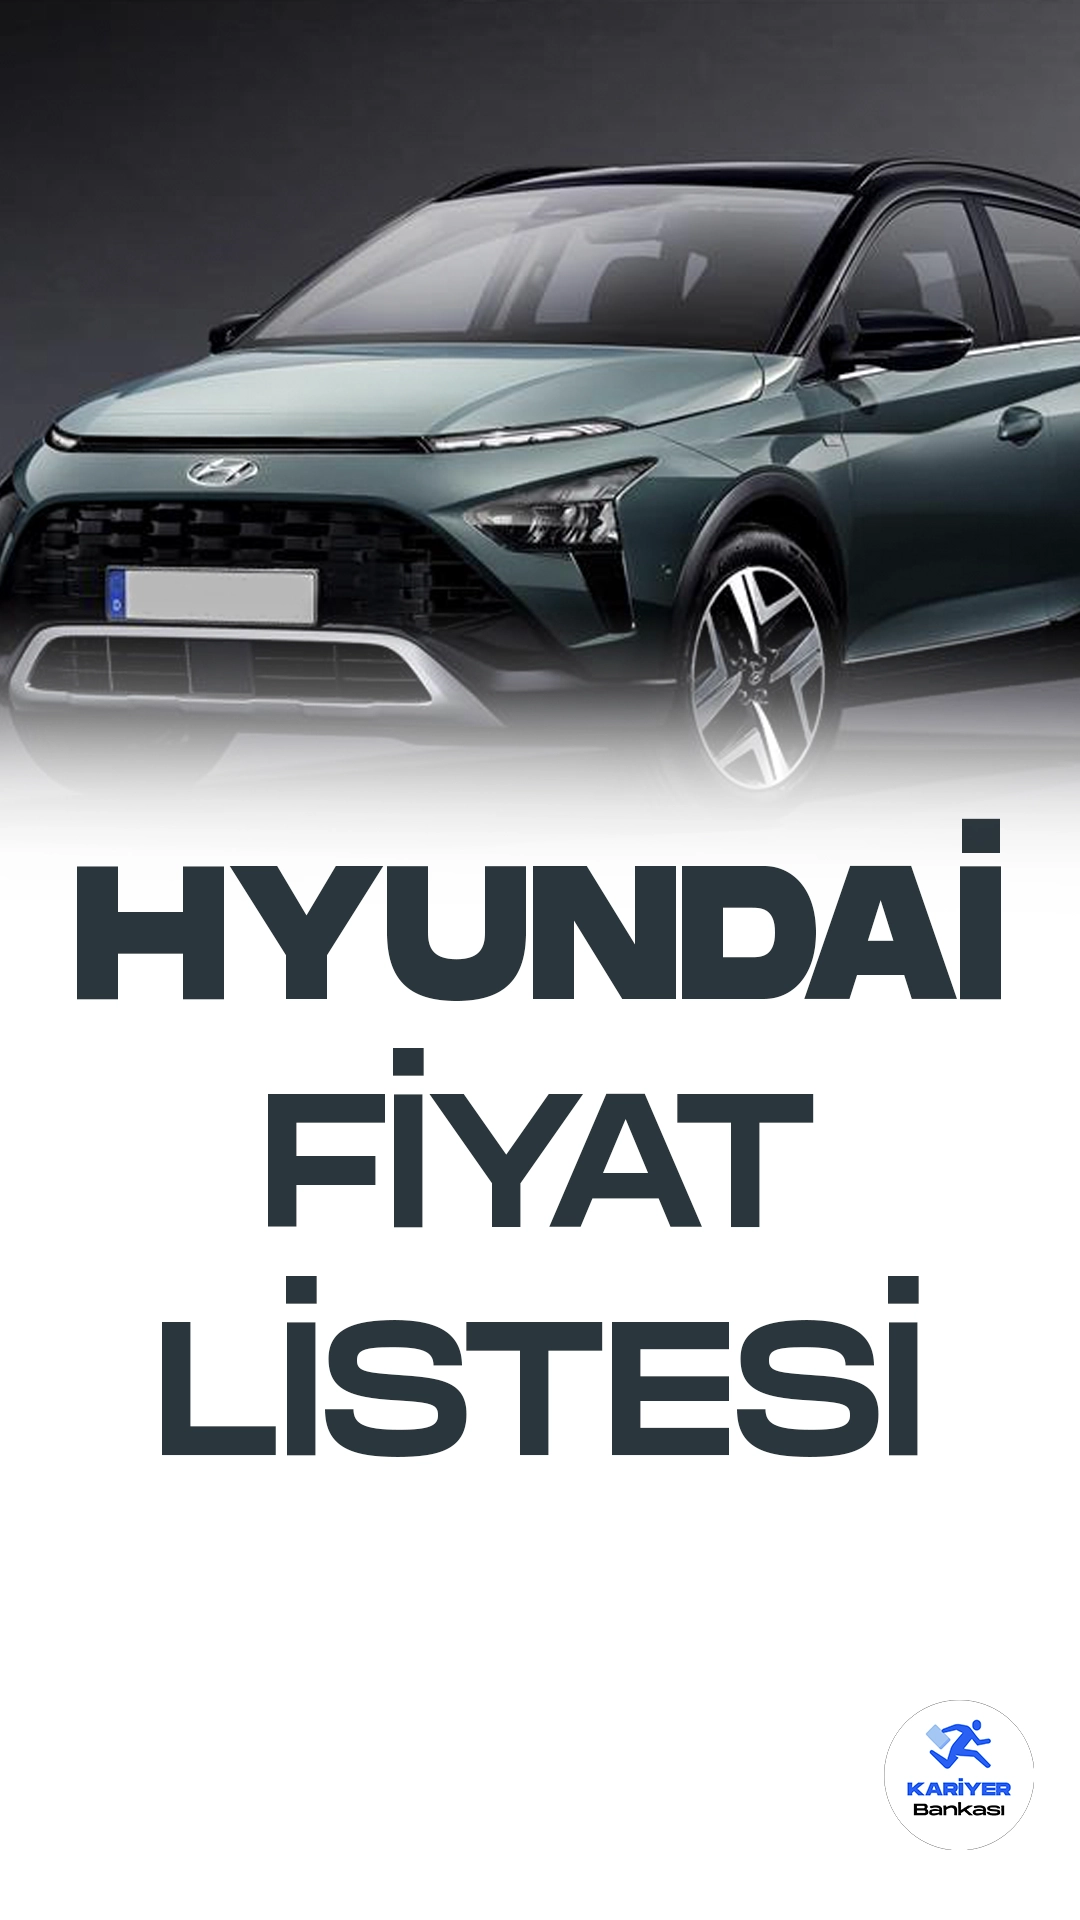 Hyundai Ağustos 2023 Fiyat Listesi Yayımlandı.Hyundai, geniş ve çeşitli araç model portföyüyle otomotiv sektöründe öne çıkan bir marka olarak dikkat çekiyor. Yeni i10 ve i20, şehir içi kullanım için pratik ve ekonomik seçenekler sunarken, ELANTRA şıklık ve güvenlikle donatılmış orta sınıf bir sedan olarak tercih ediliyor. i20 N ve BAYON ise performans ve spor otomobil tutkunları için tasarlanmış özel modeller.